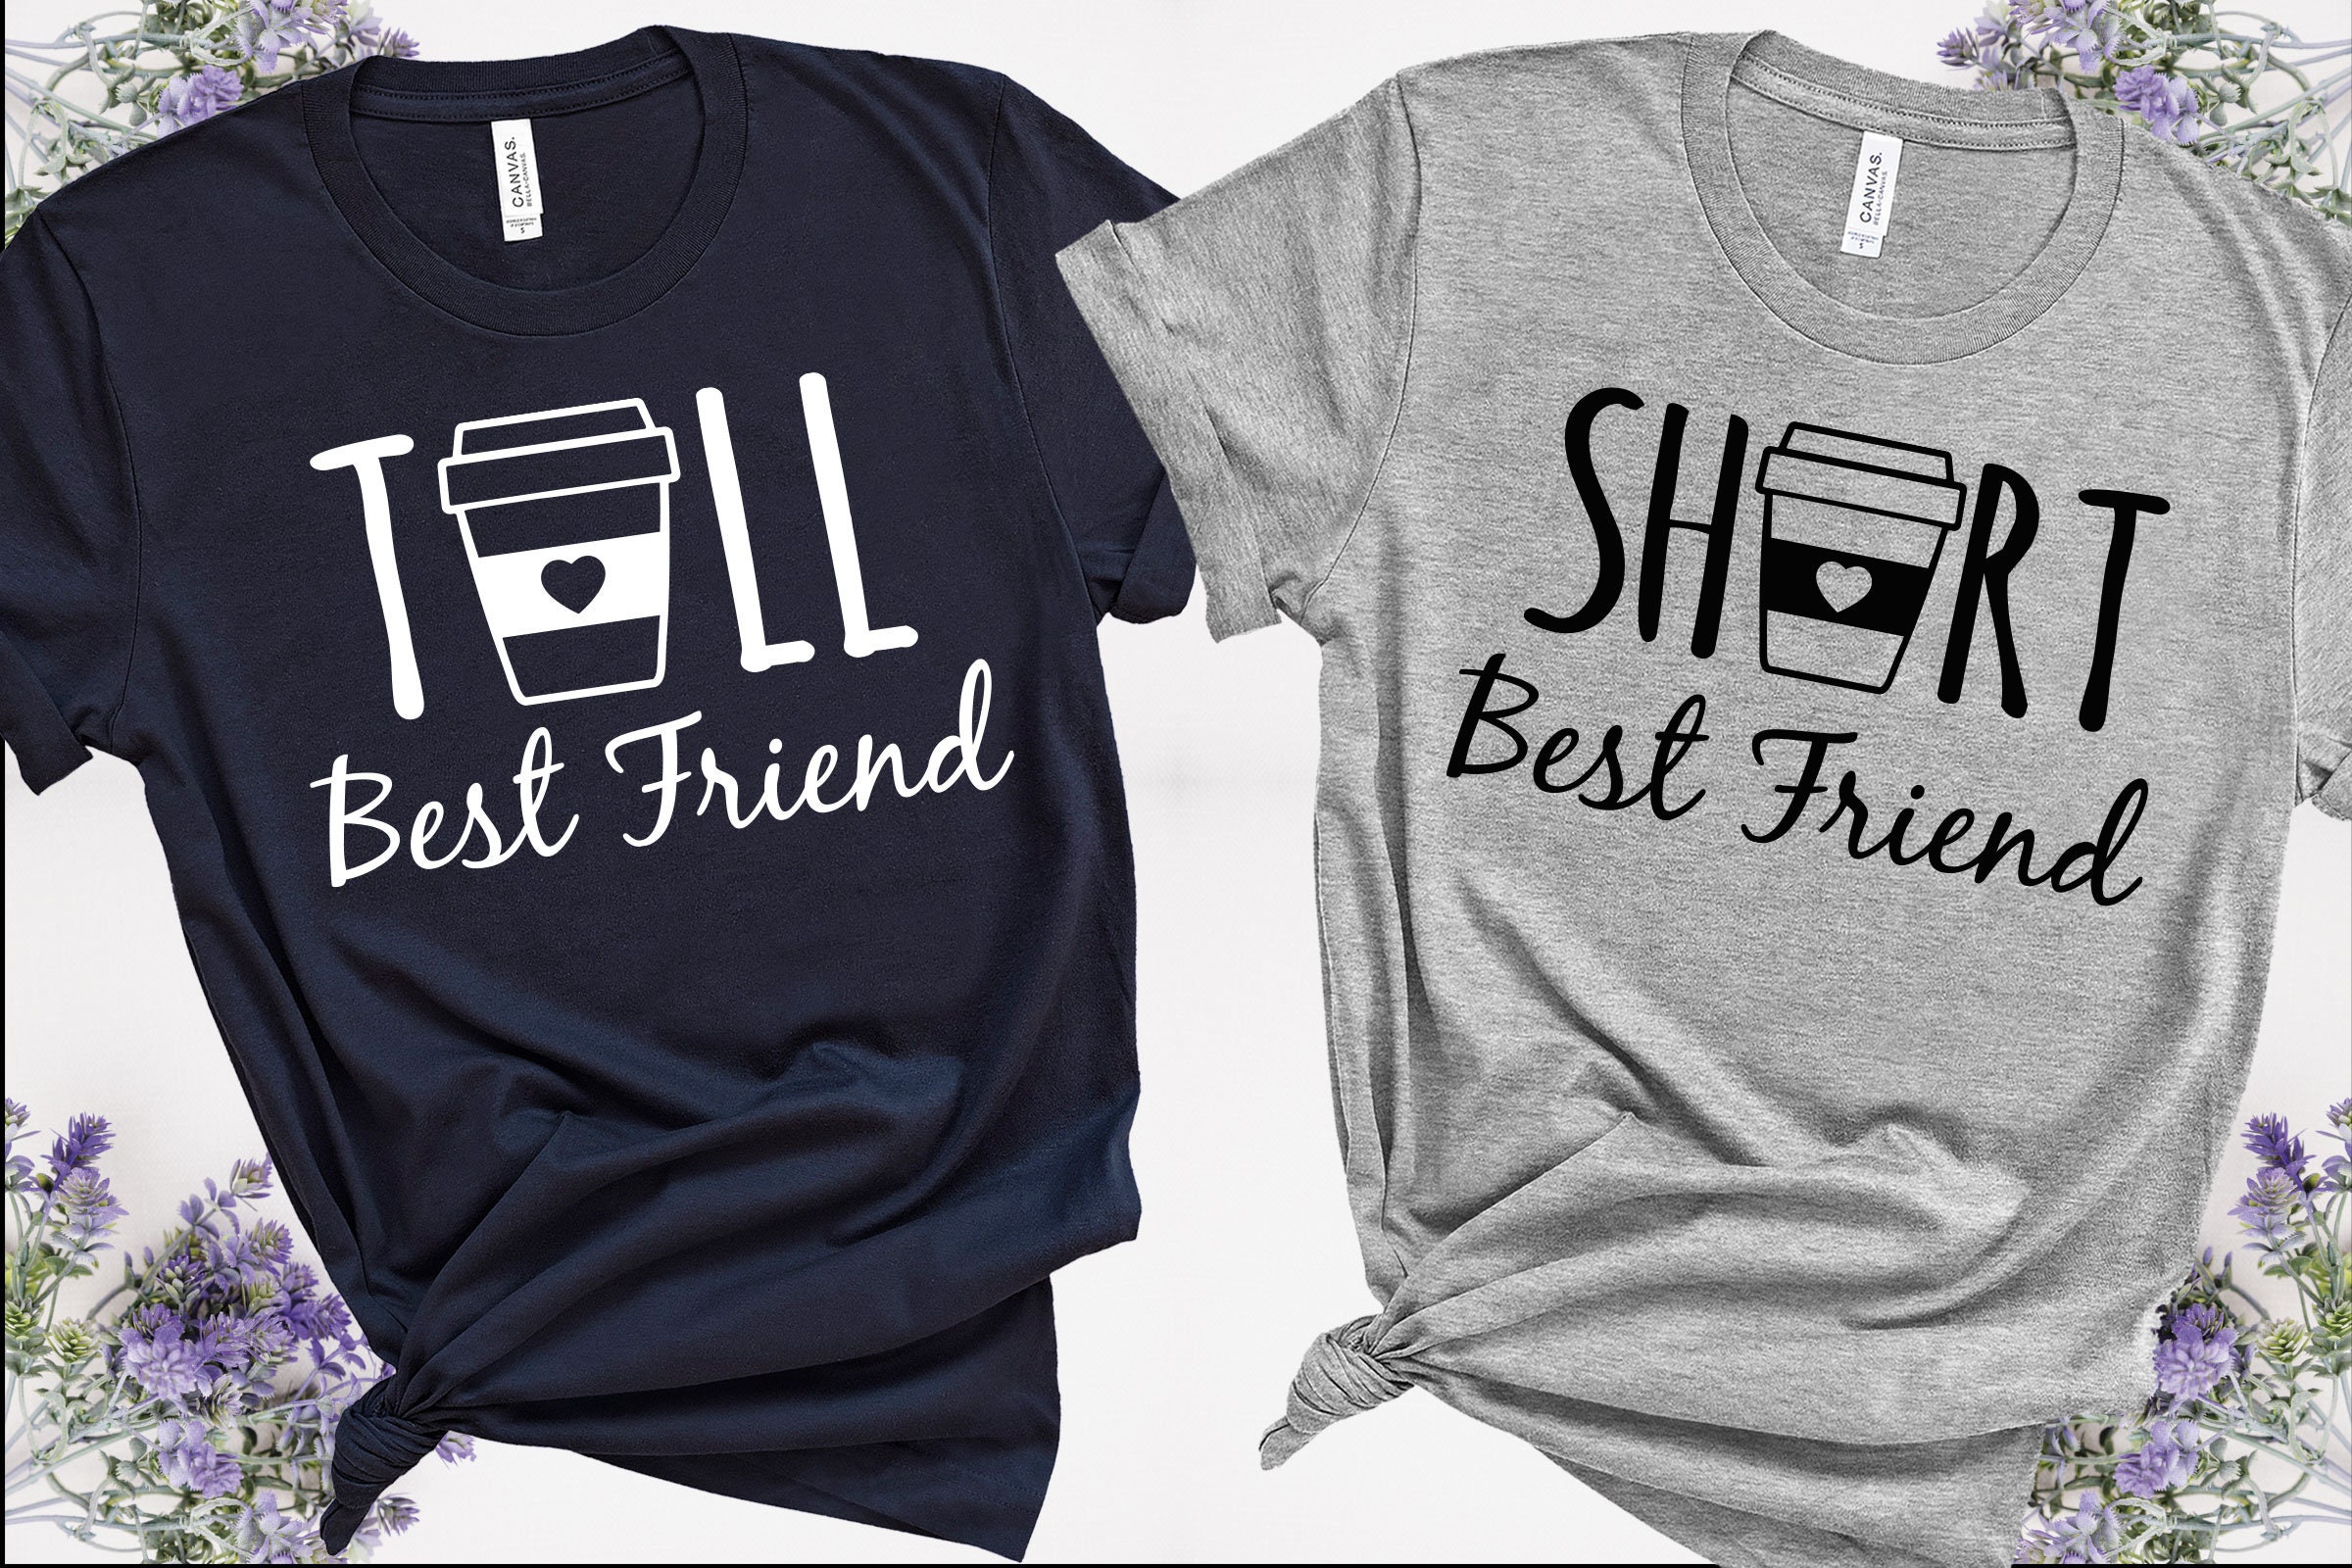 Tall Best Friend T-Shirt Short Best Friend Shirt Best Friend | Etsy